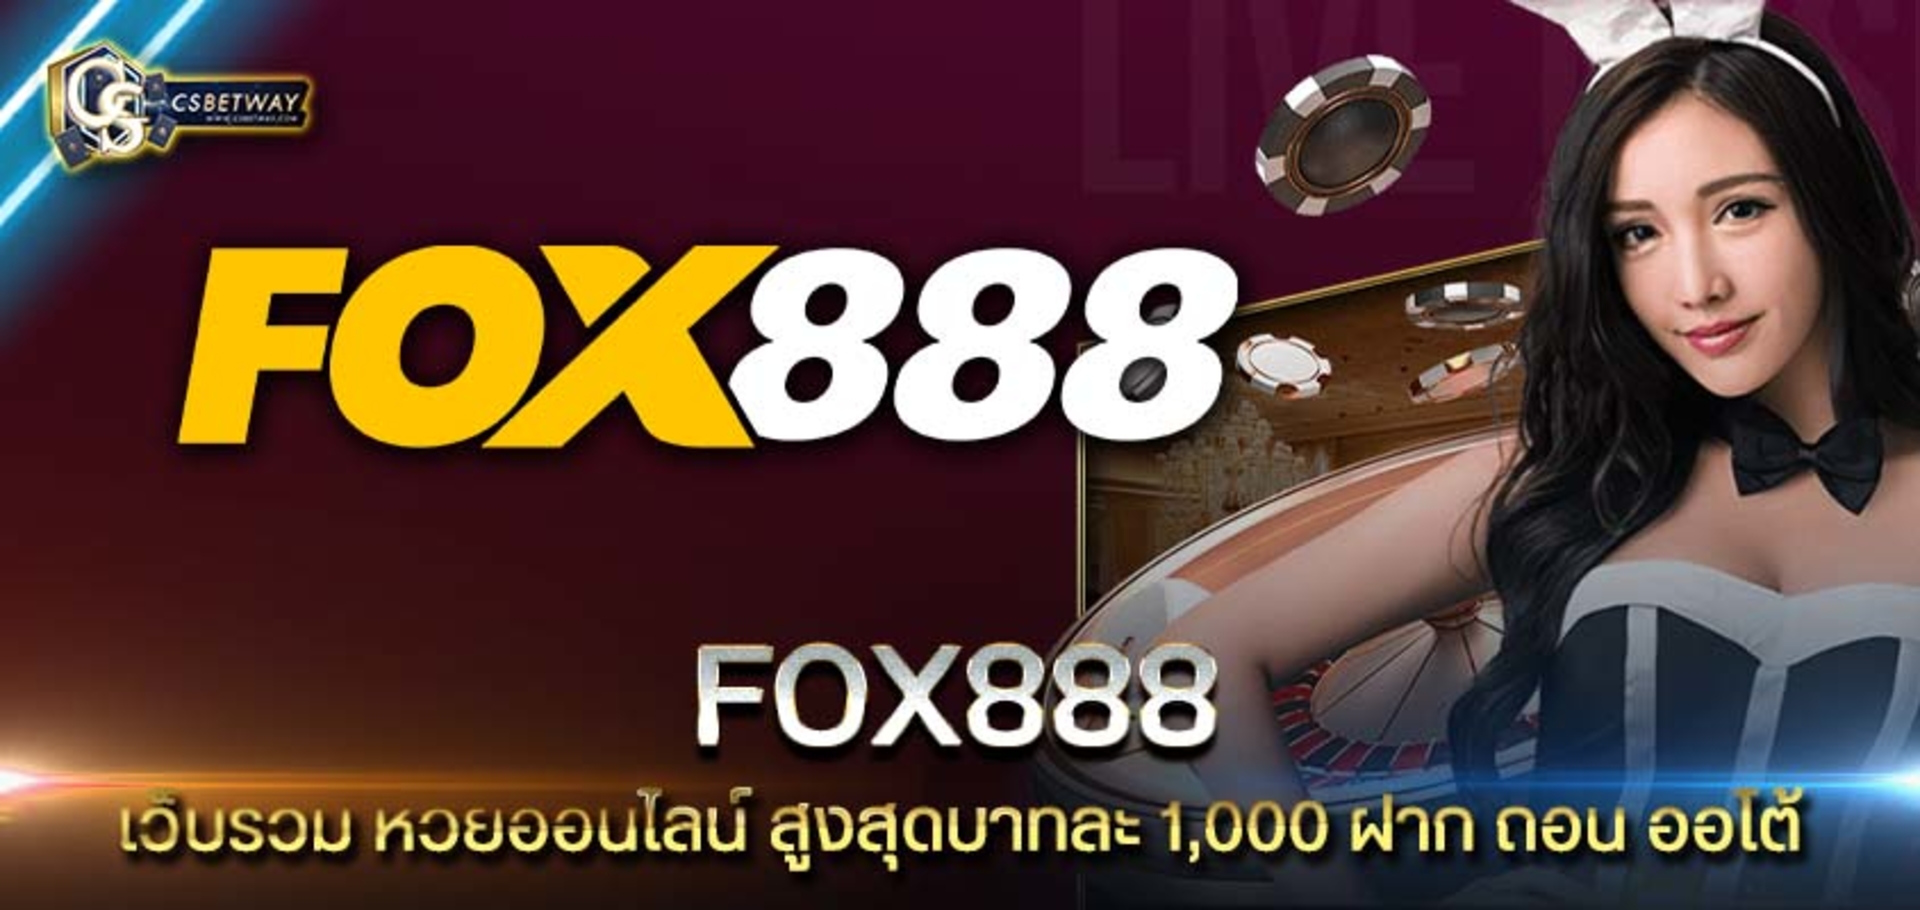 FOX888 เว็บรวม หวยออนไลน์ สูงสุดบาทละ 1,000 ฝาก ถอน ออโต้